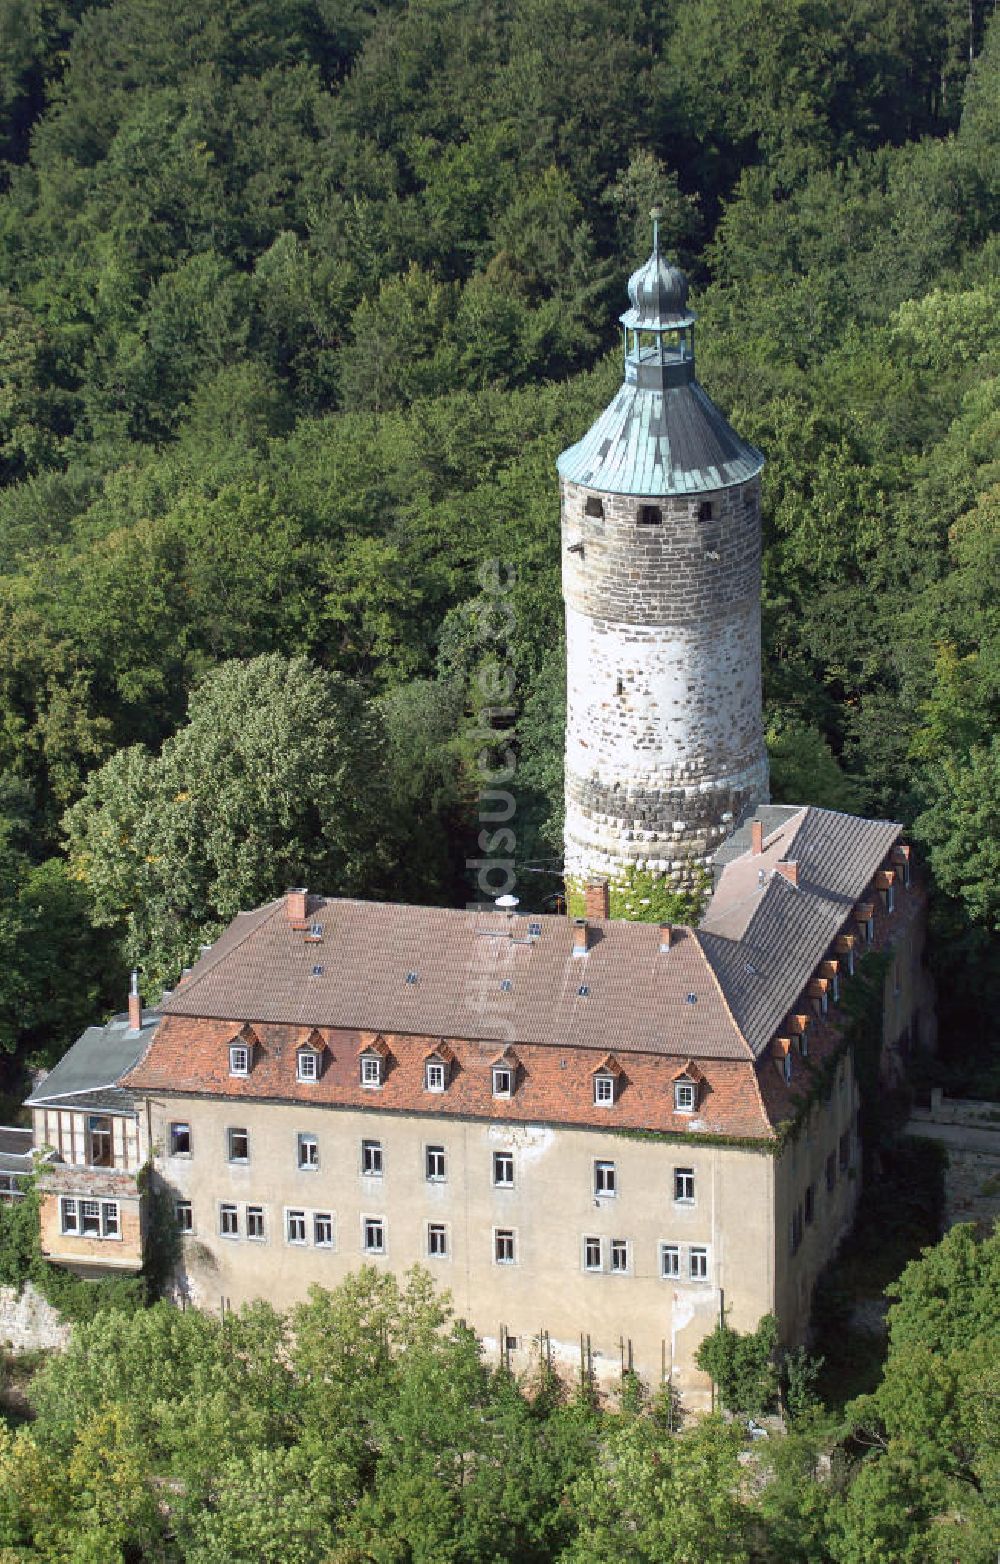 Tonndorf von oben - Blick auf das Schloss Tonndorf im angrenzenden Wald des Ortes Tonndorf